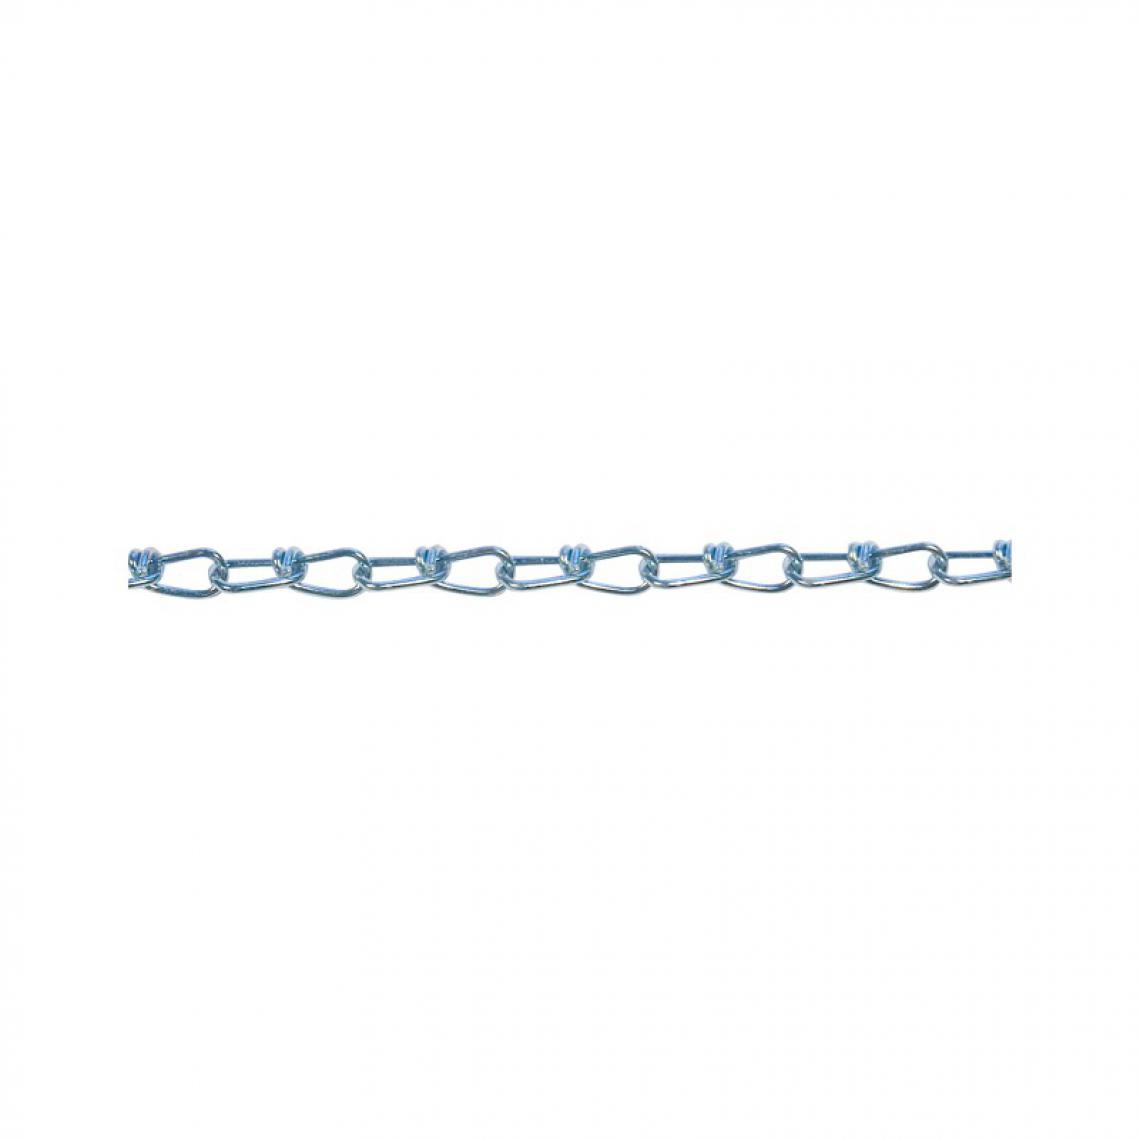 marque generique - Chaine DIN 5686 K27 2,5 mm inoxydable 30 m (Par 30) - Corde et sangle